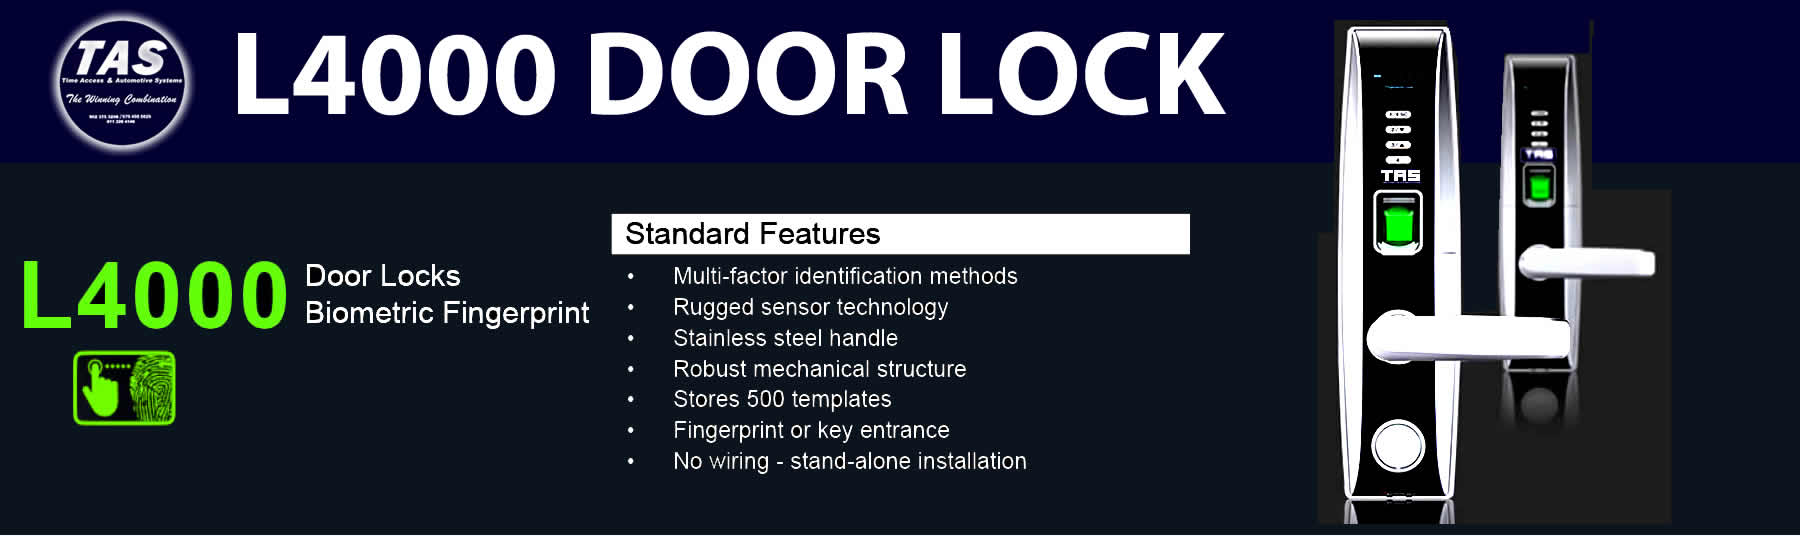 l4000 door locks banner